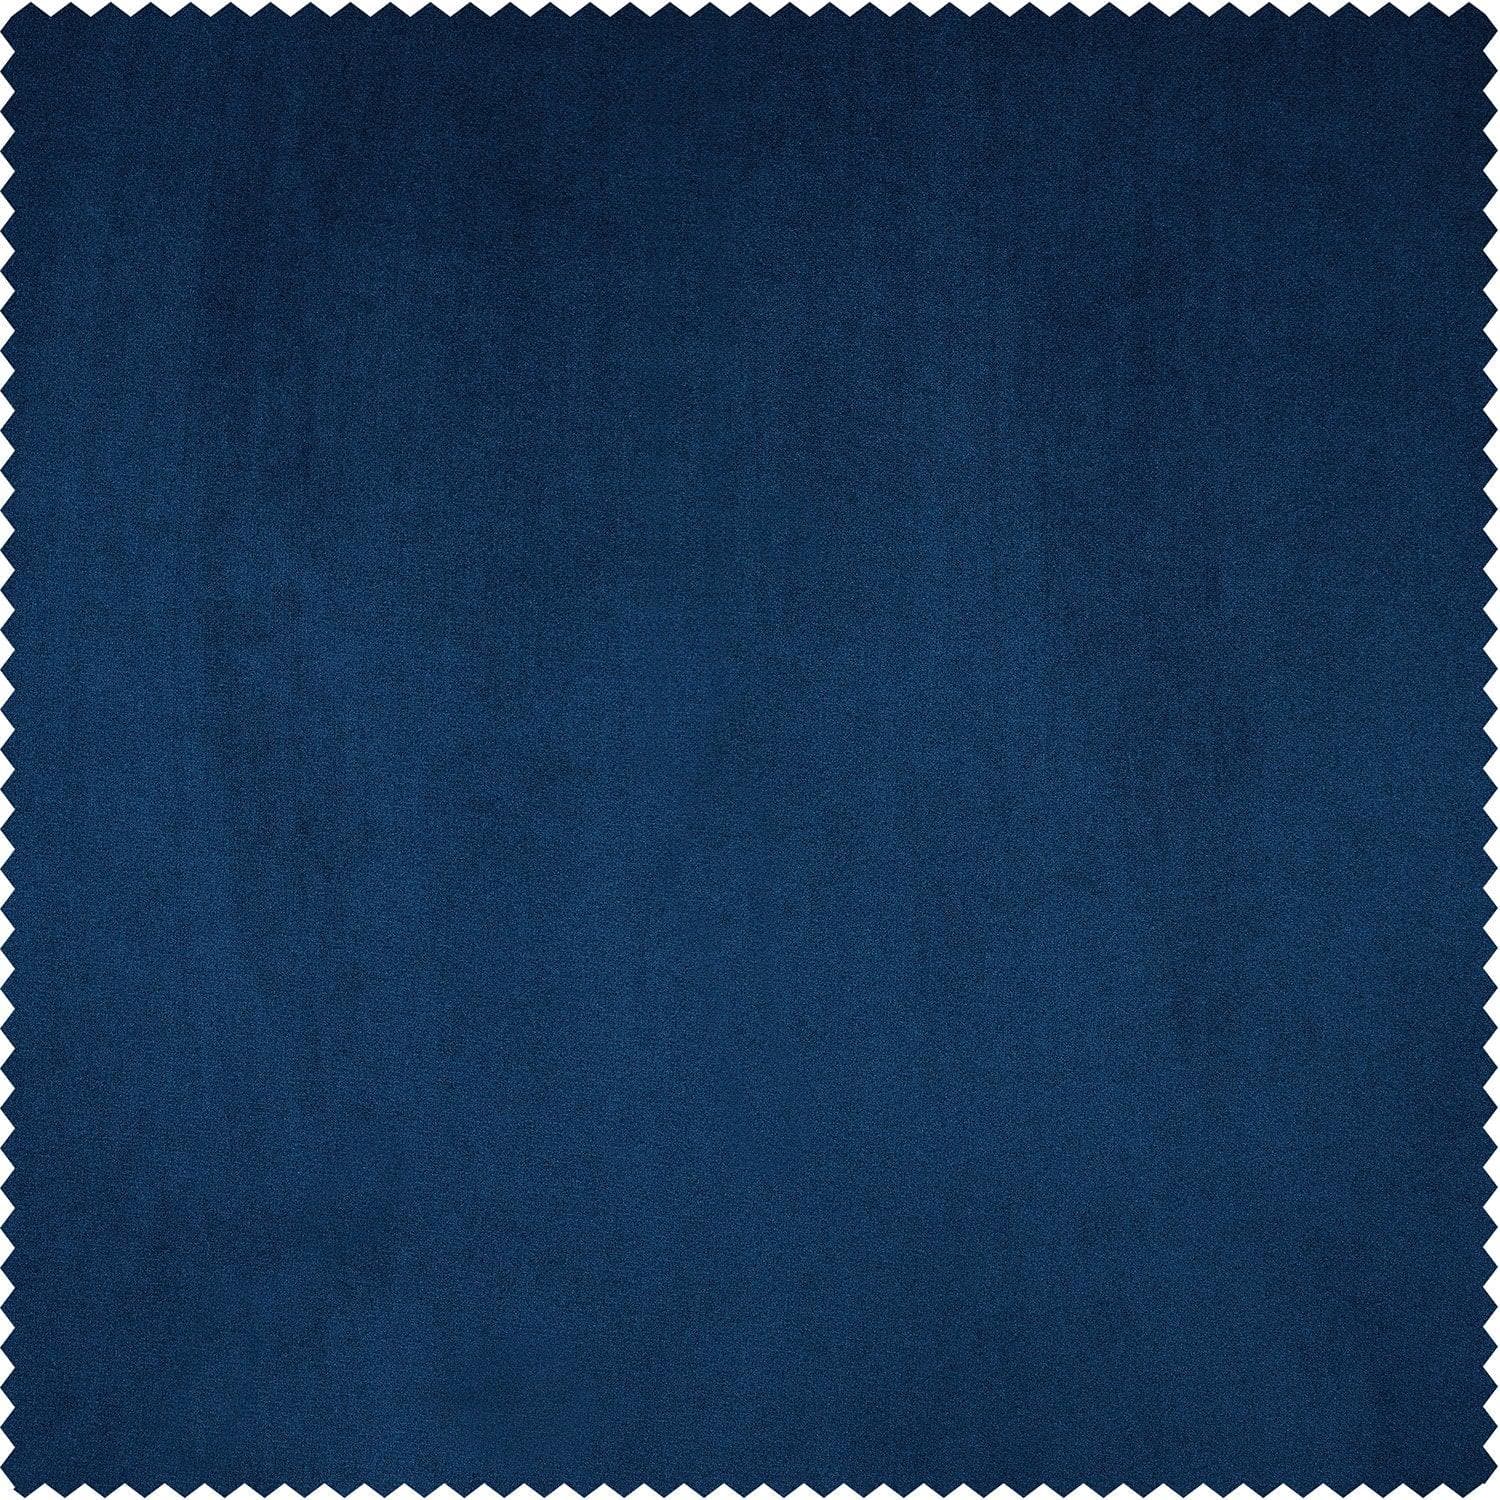 Pisces Blue Heritage Plush Velvet Custom Curtain